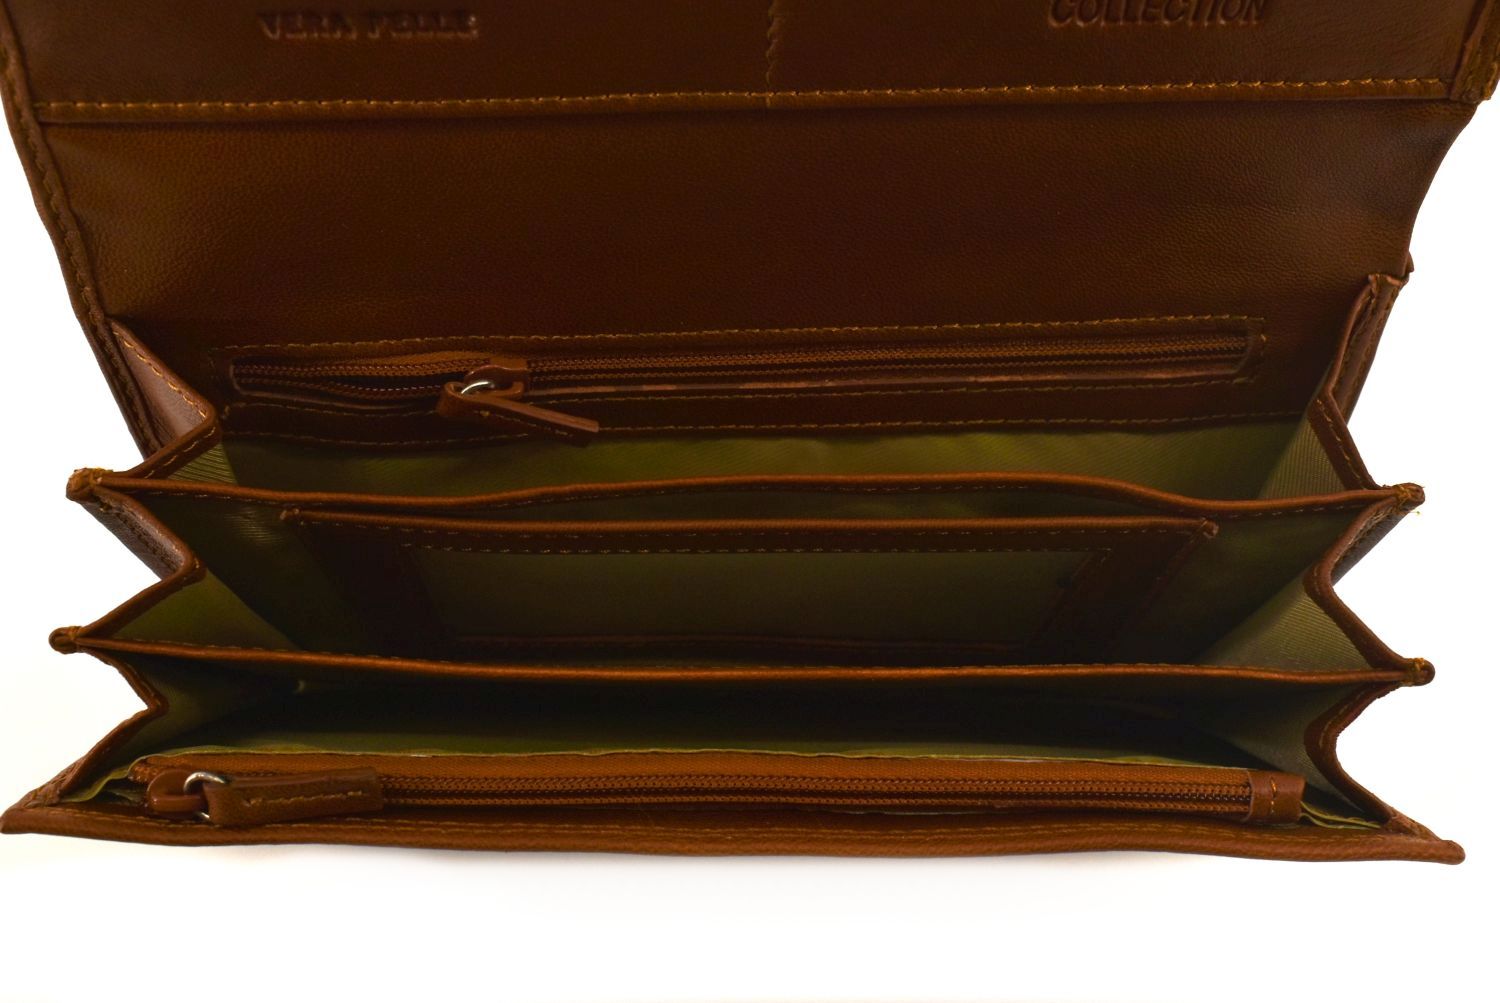 Dámská kožená peněženka Coveri Collection - černá